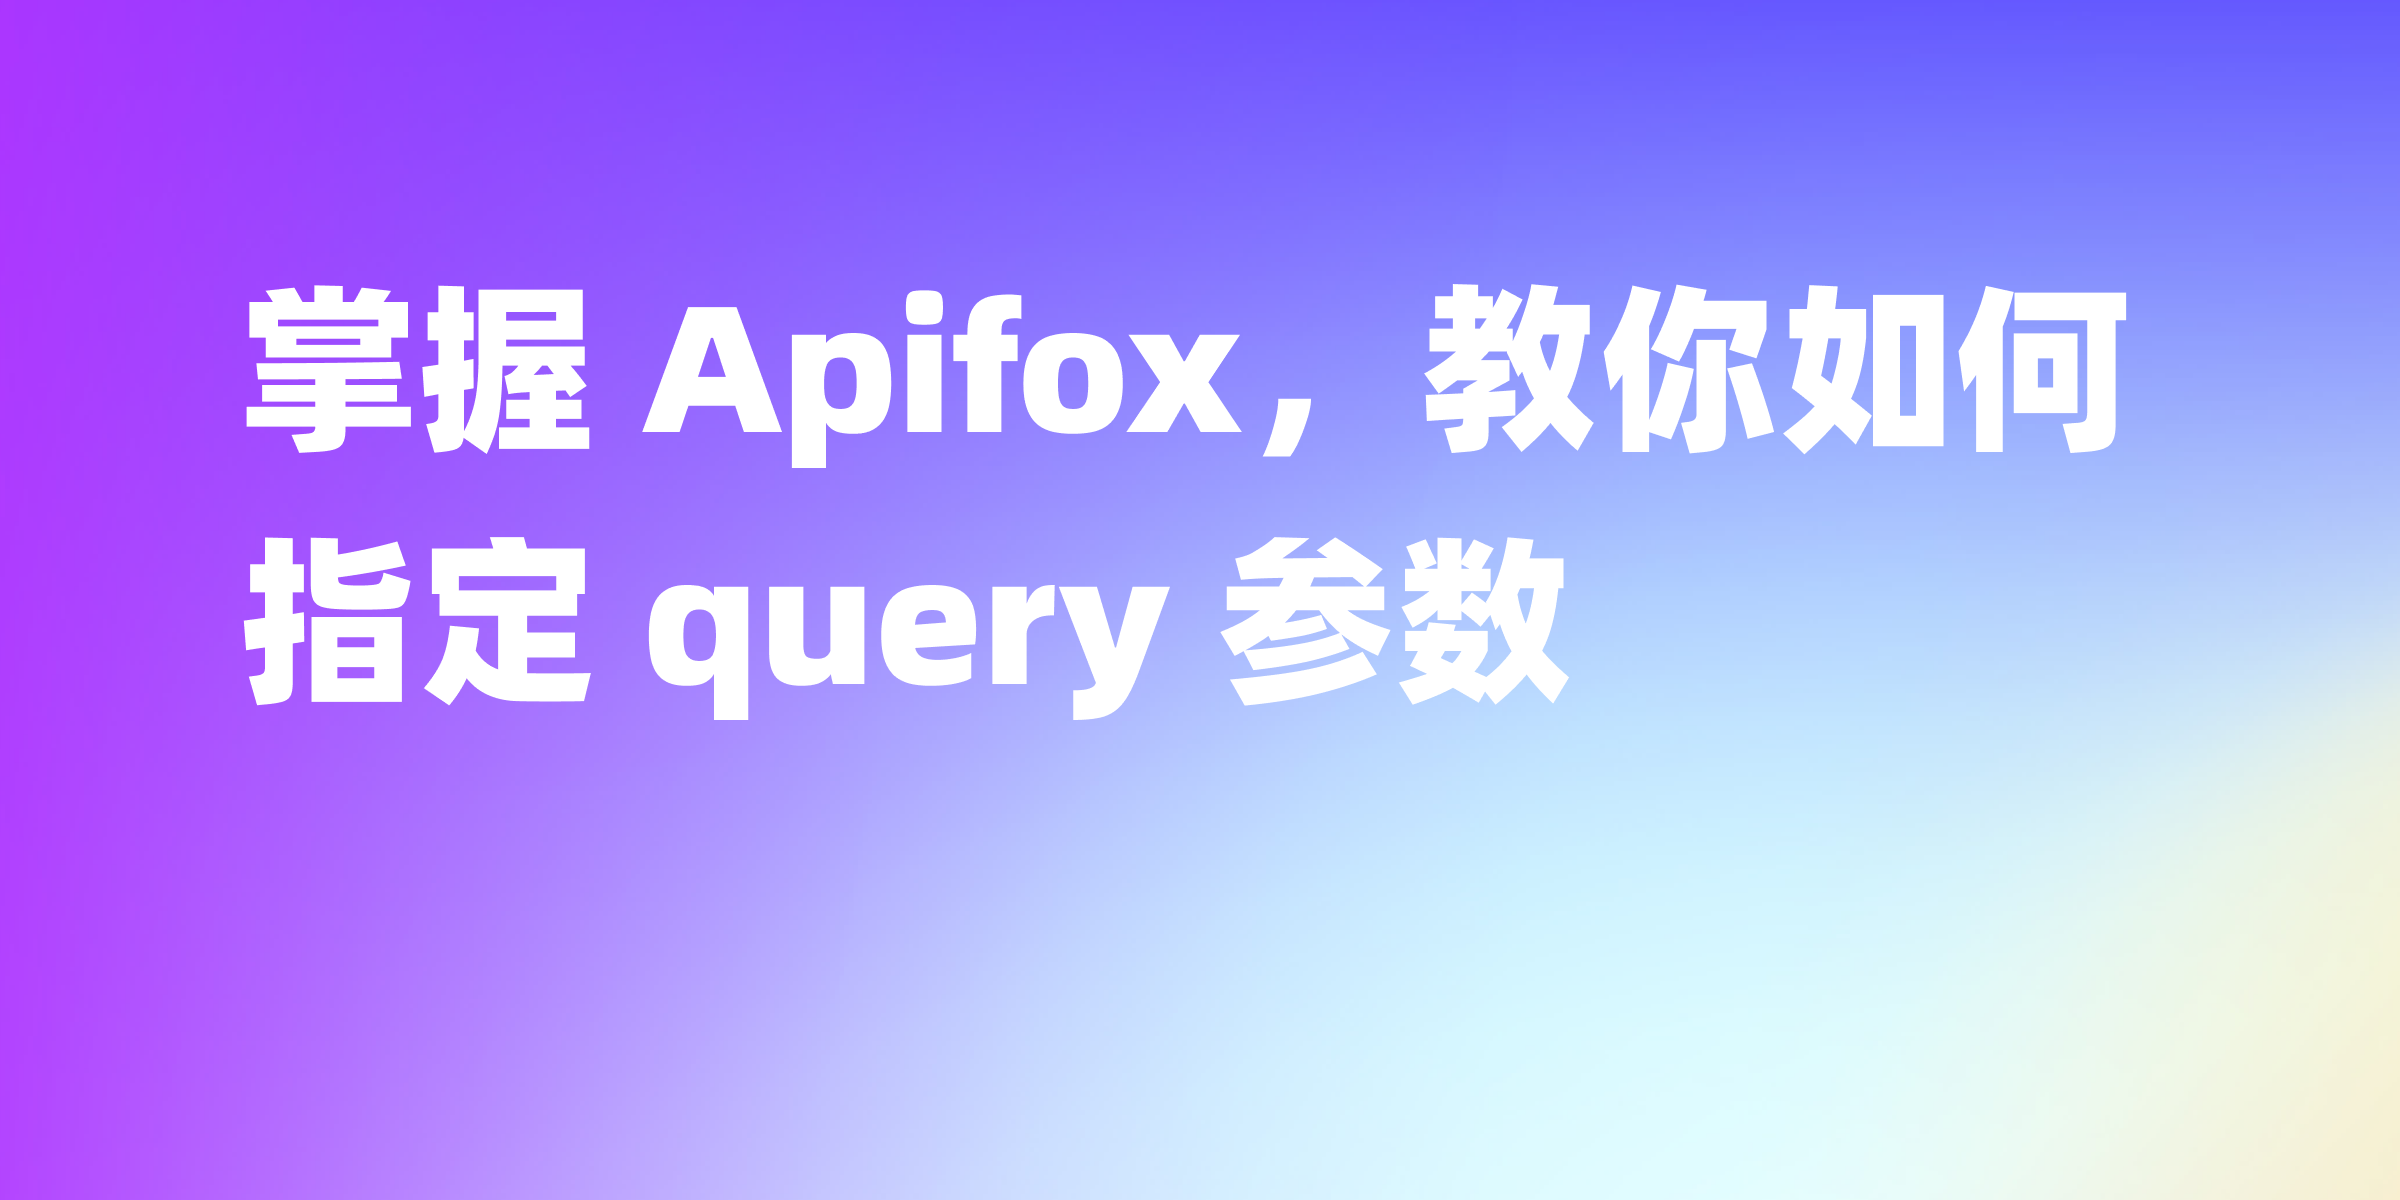 Apifox 中如何指定 query 参数